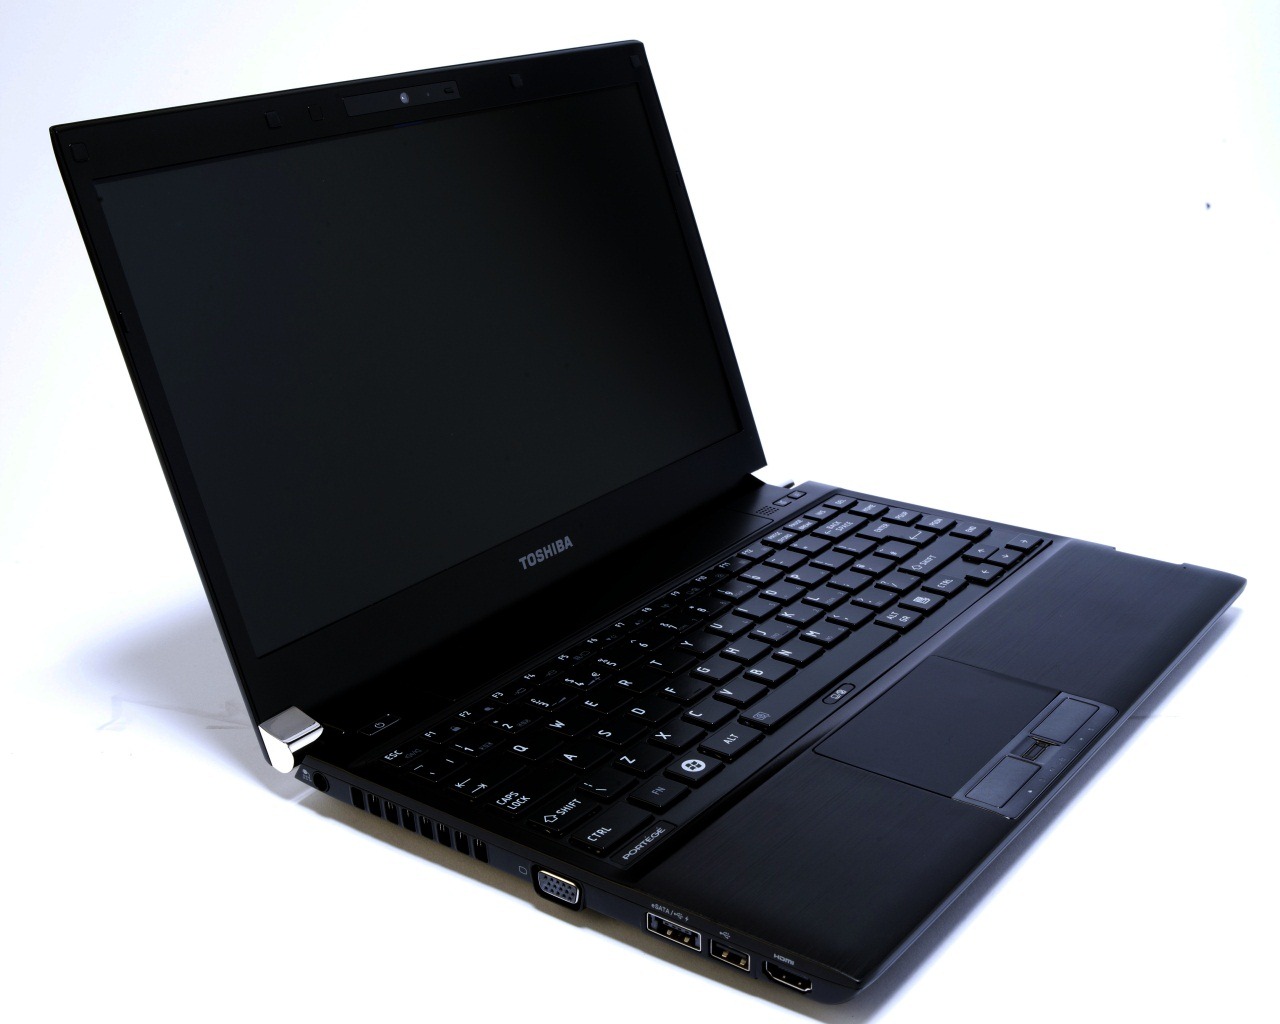 Laptop văn phòng đẳng cấp Toshiba Dynabook R730, chip i5, 4G Ram, 13.3 inch HD mới 99% đủ phụ kiện (cài sẵn 10 game  & 10 phim)